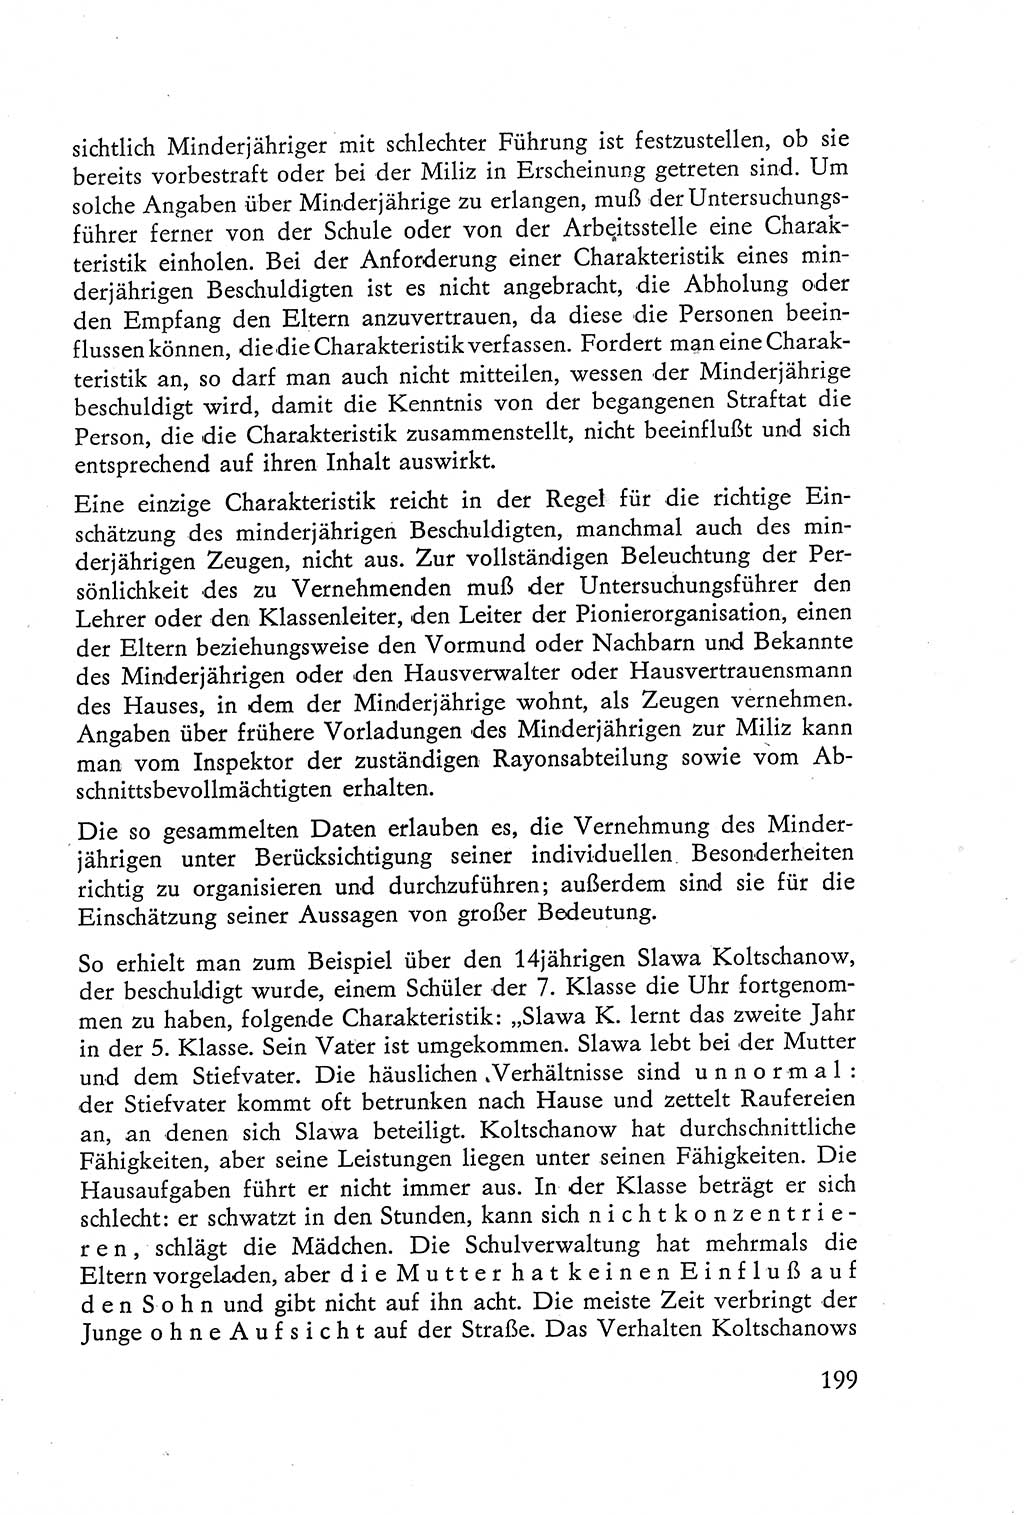 Die Vernehmung [Deutsche Demokratische Republik (DDR)] 1960, Seite 199 (Vern. DDR 1960, S. 199)